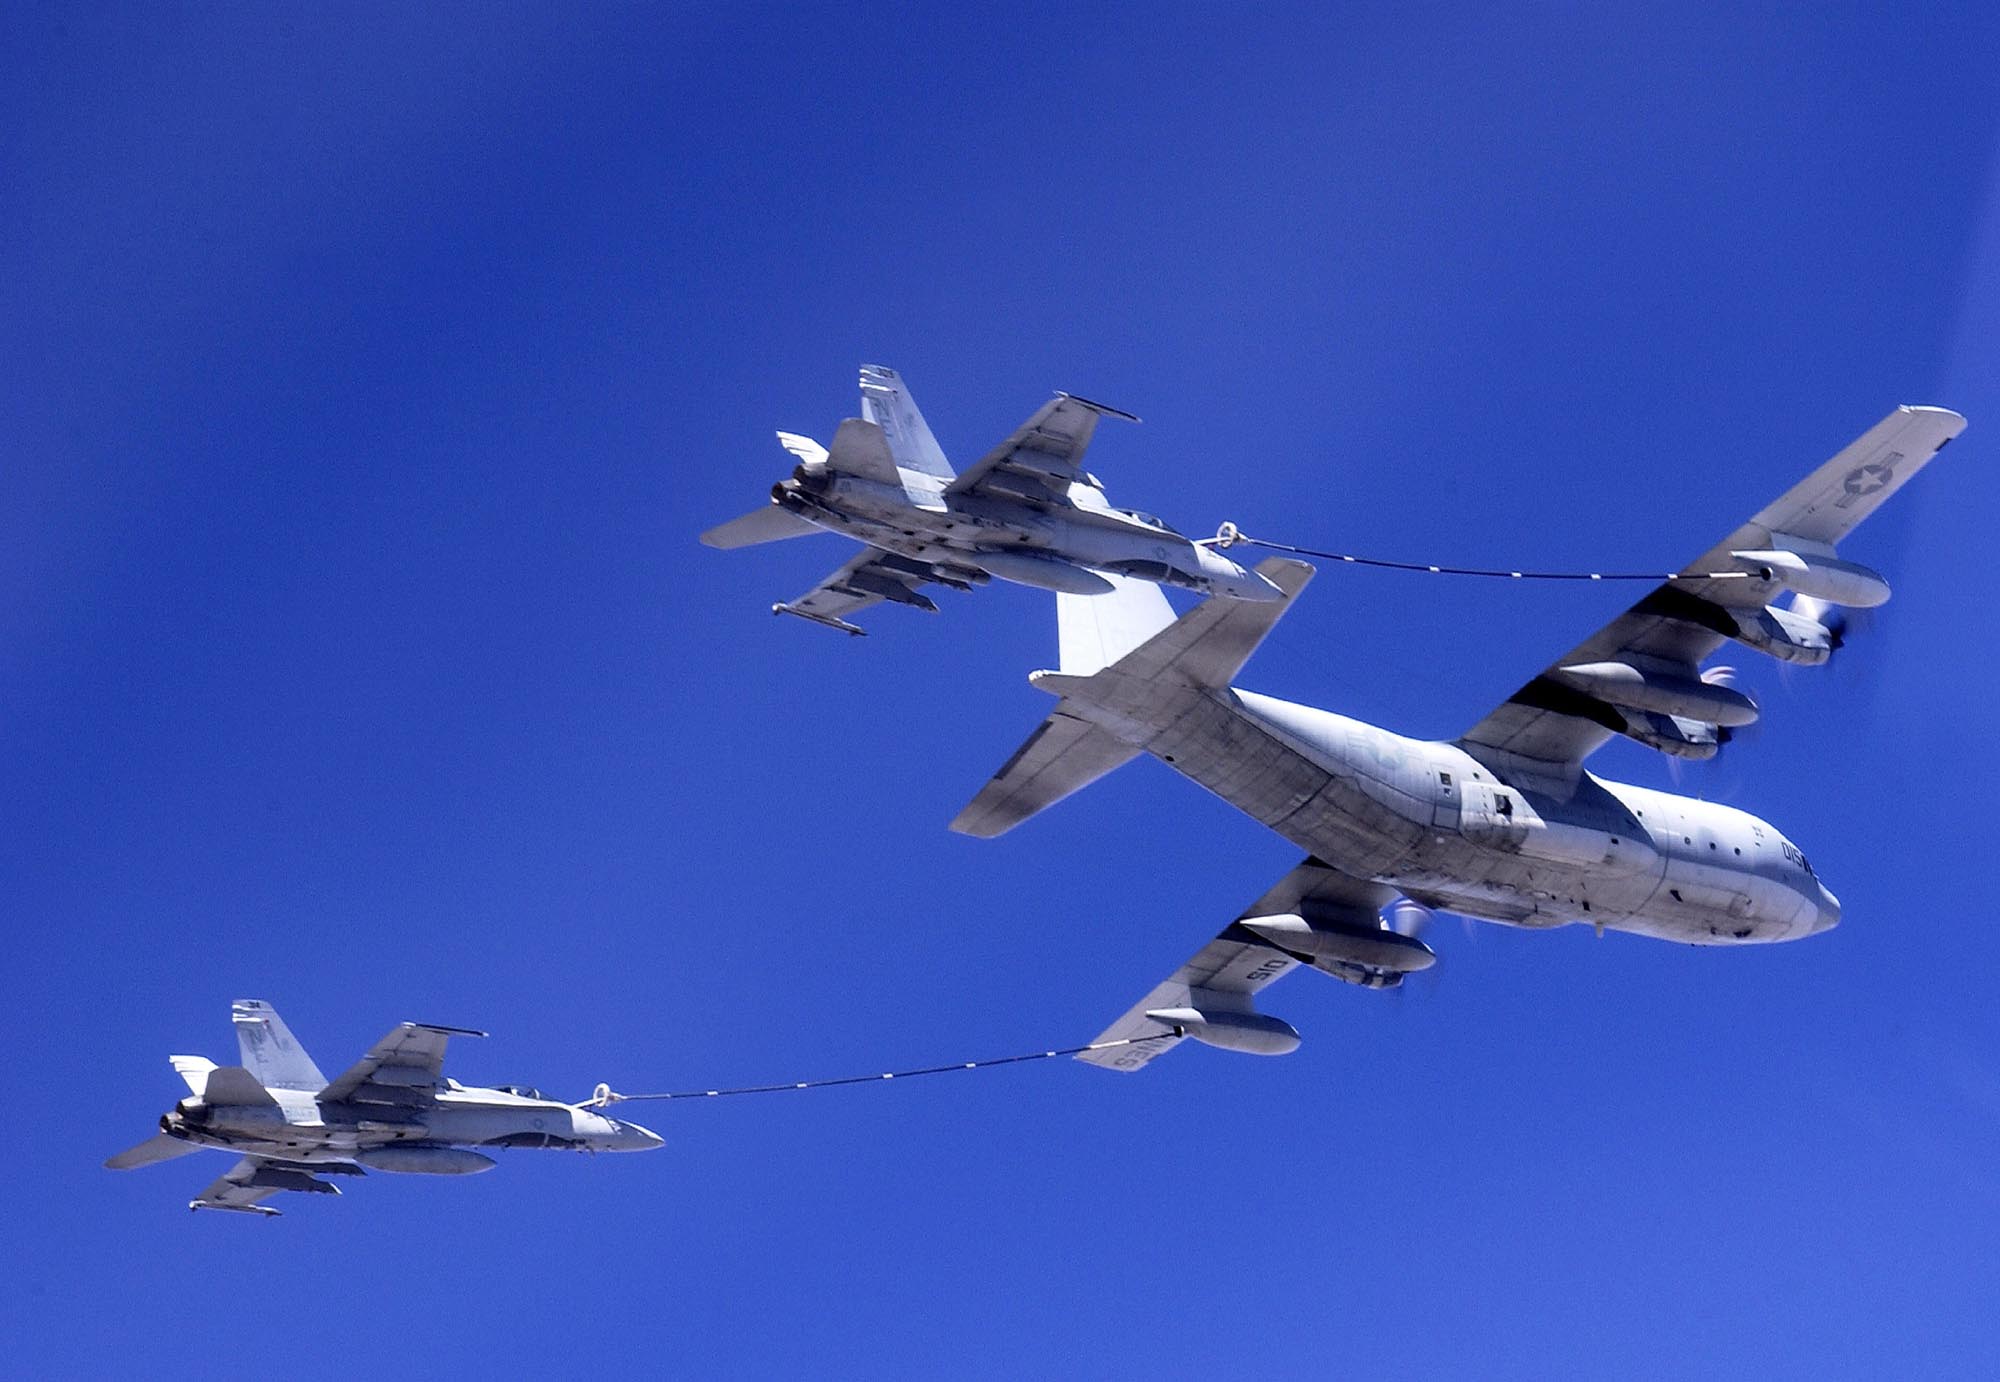 combatindex.com: KC-130 Hercules